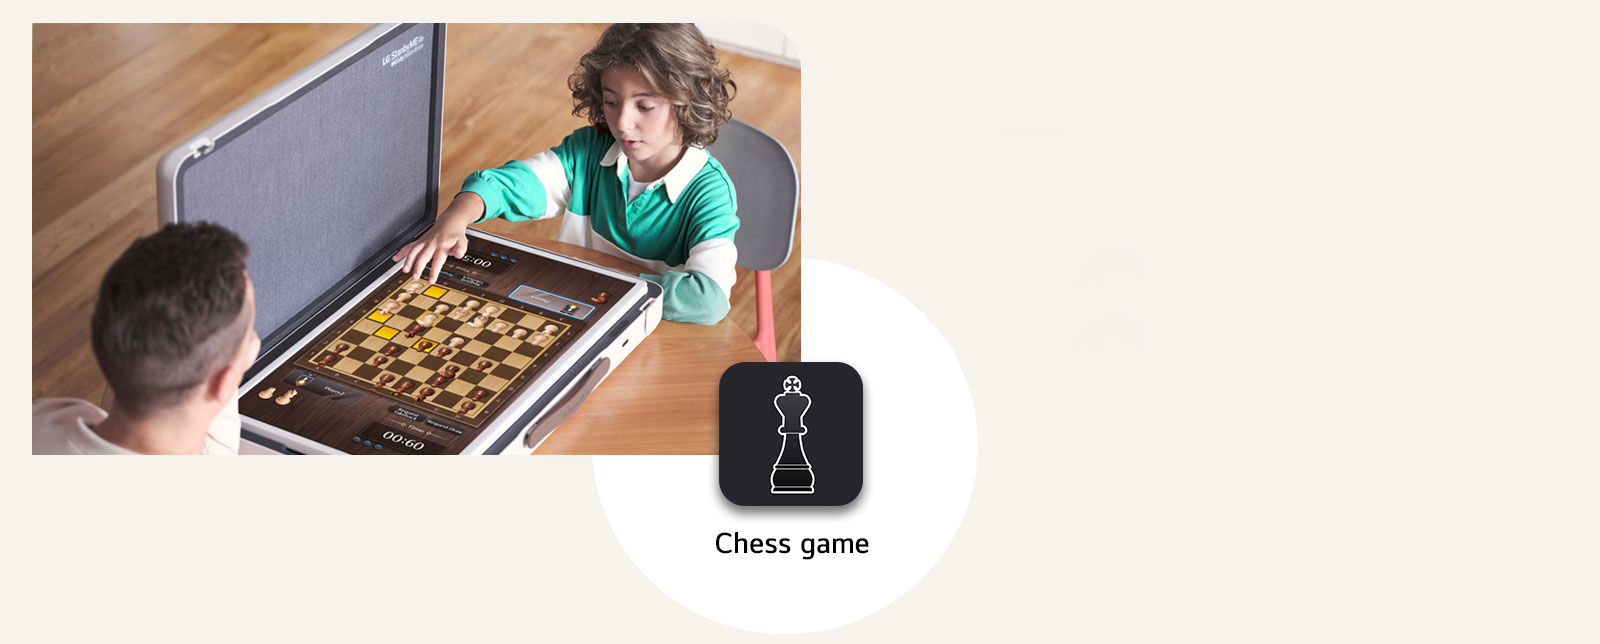 Padre e hijo juegan al ajedrez a través del LG StanbyME Go. En el medio de la imagen, se muestra el icono del juego de ajedrez.